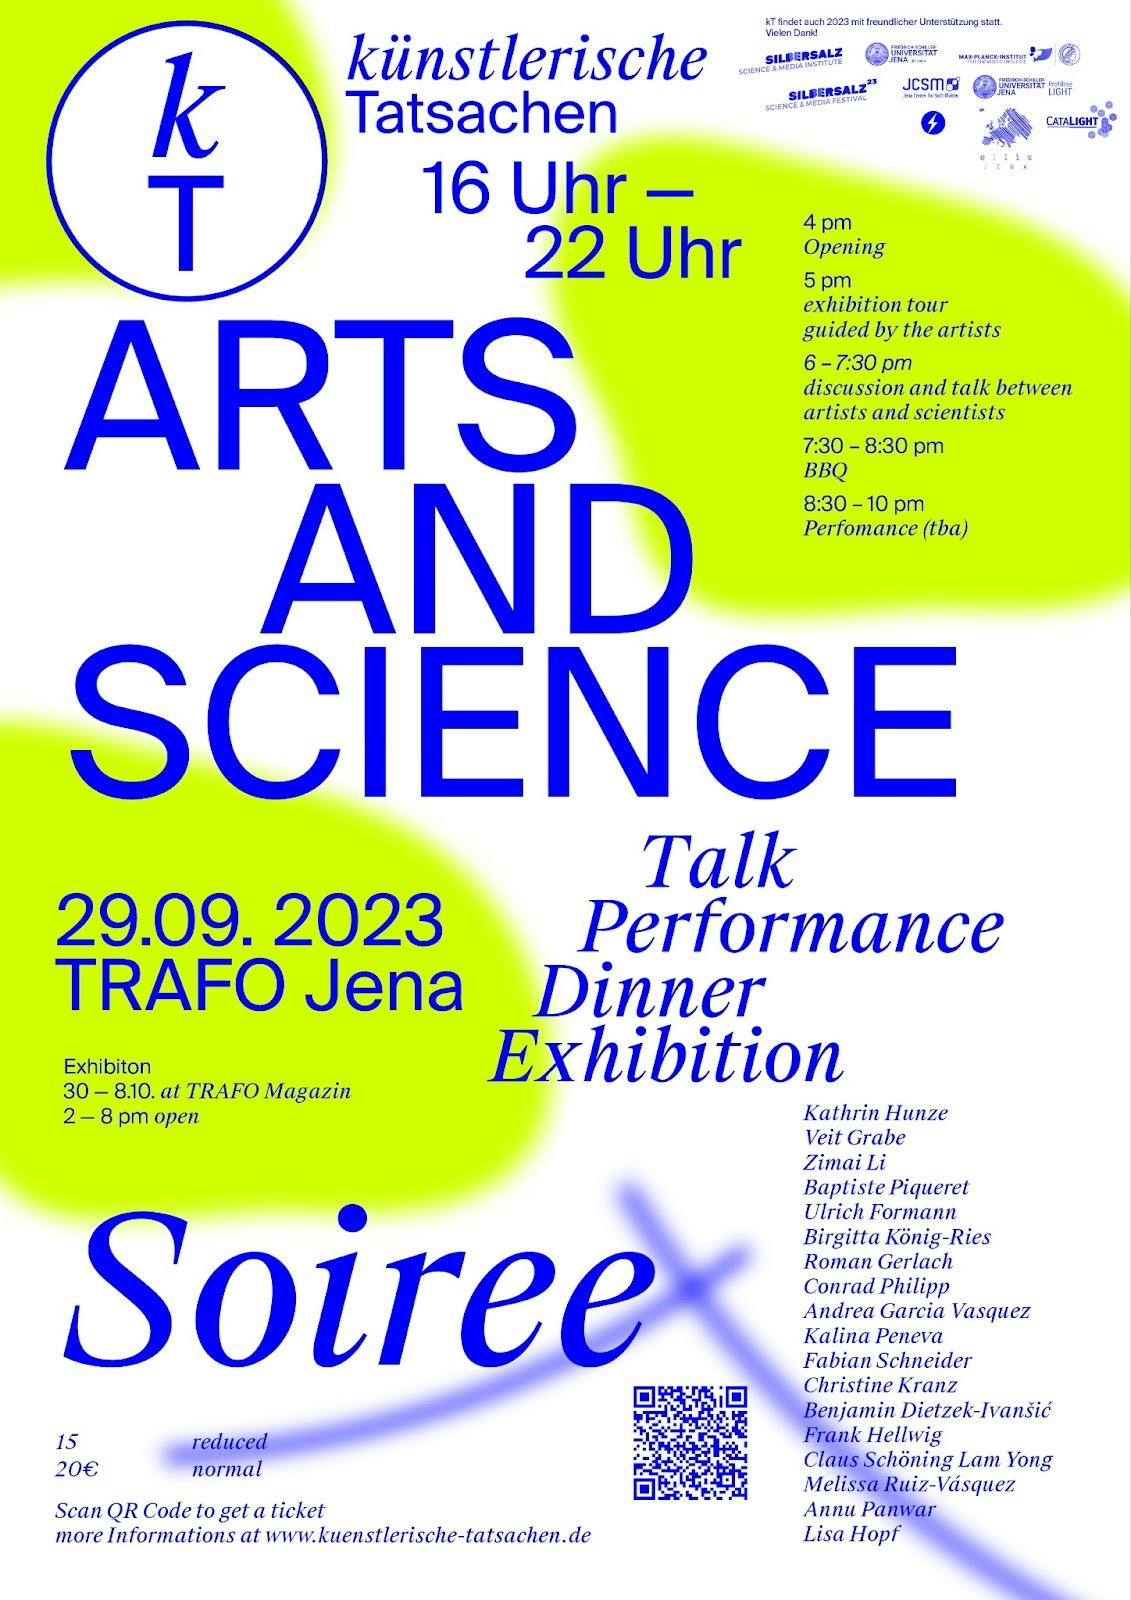 künstlerische Tatsachen Arts & Science Soiree exhibition flyer